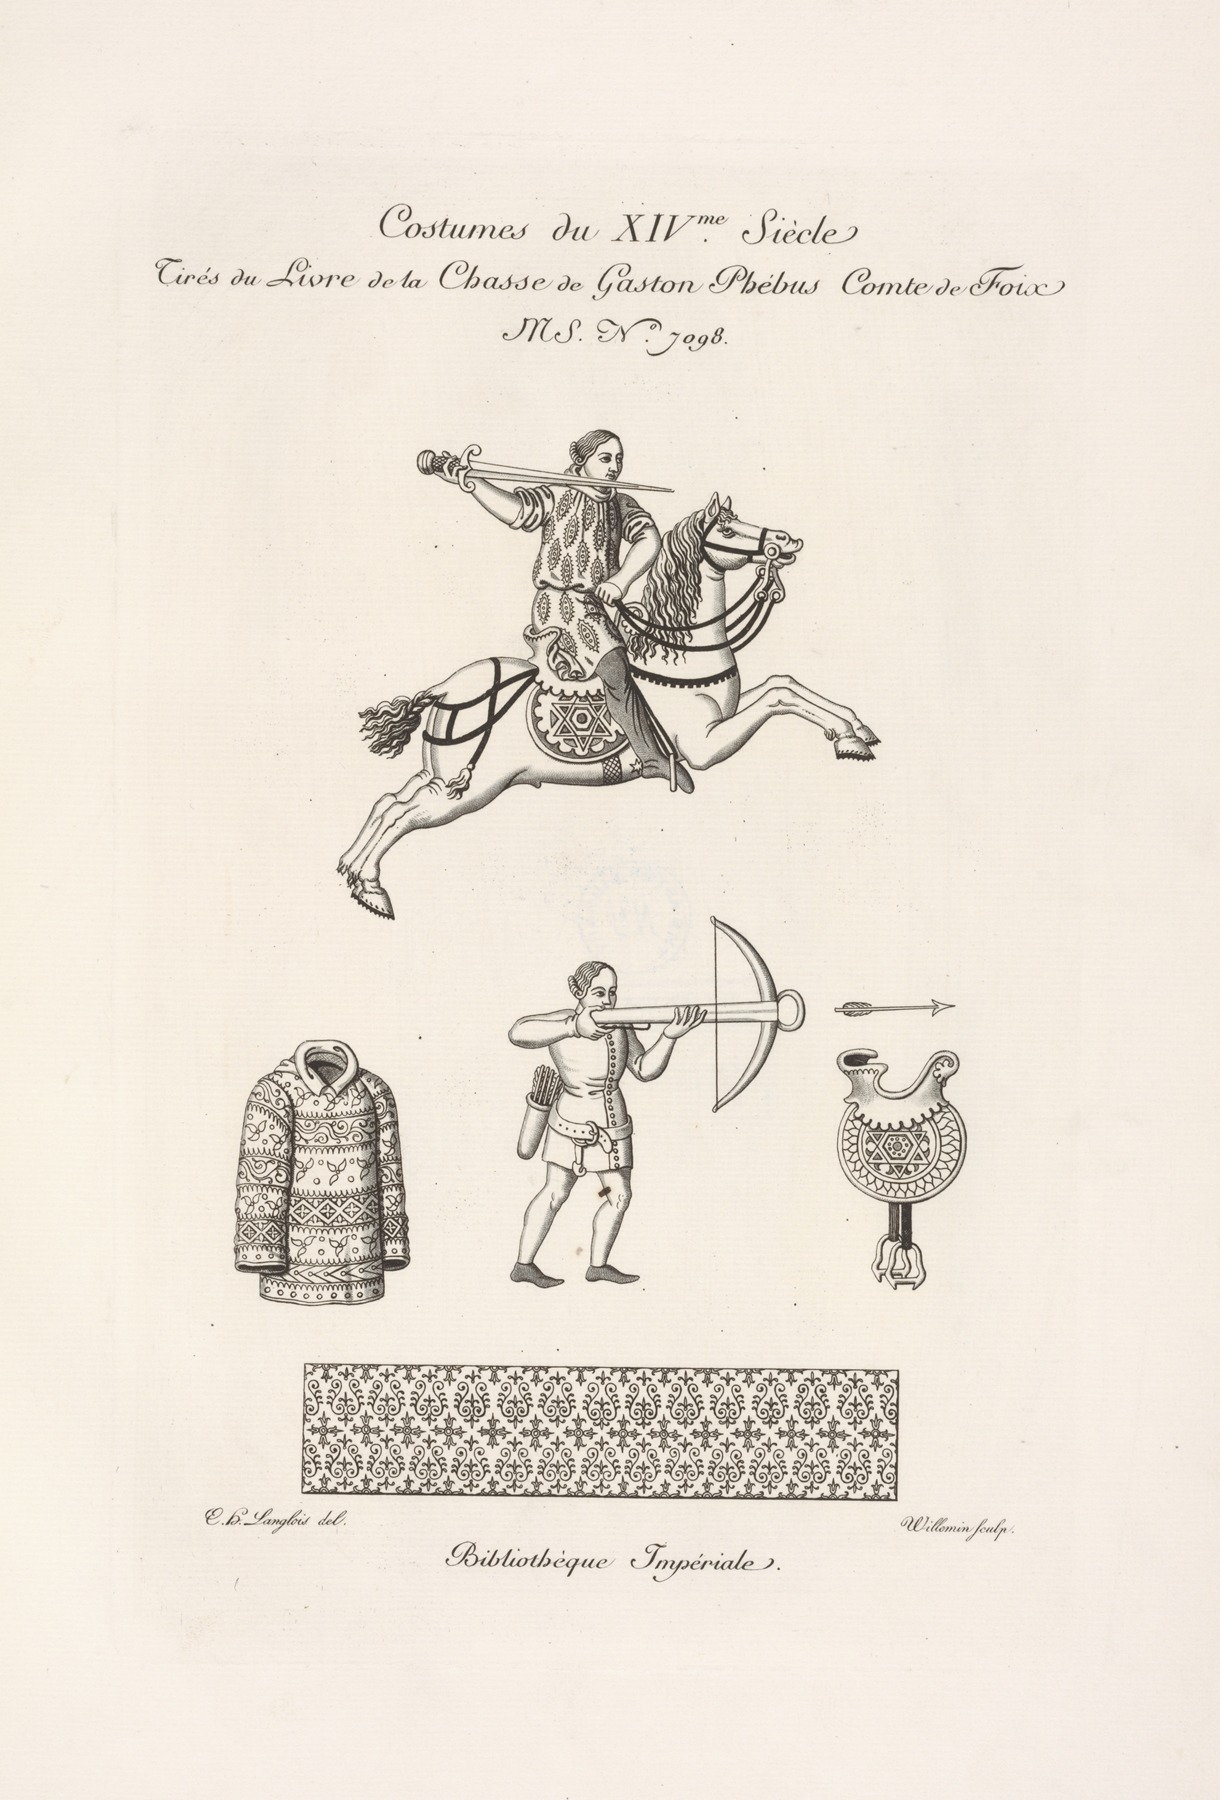 Nicolas Xavier Willemin - Costumes du XIVme. siècle tirés du livre de la chasse de Gaston Phébus comte de Foix MS. No. 7098.